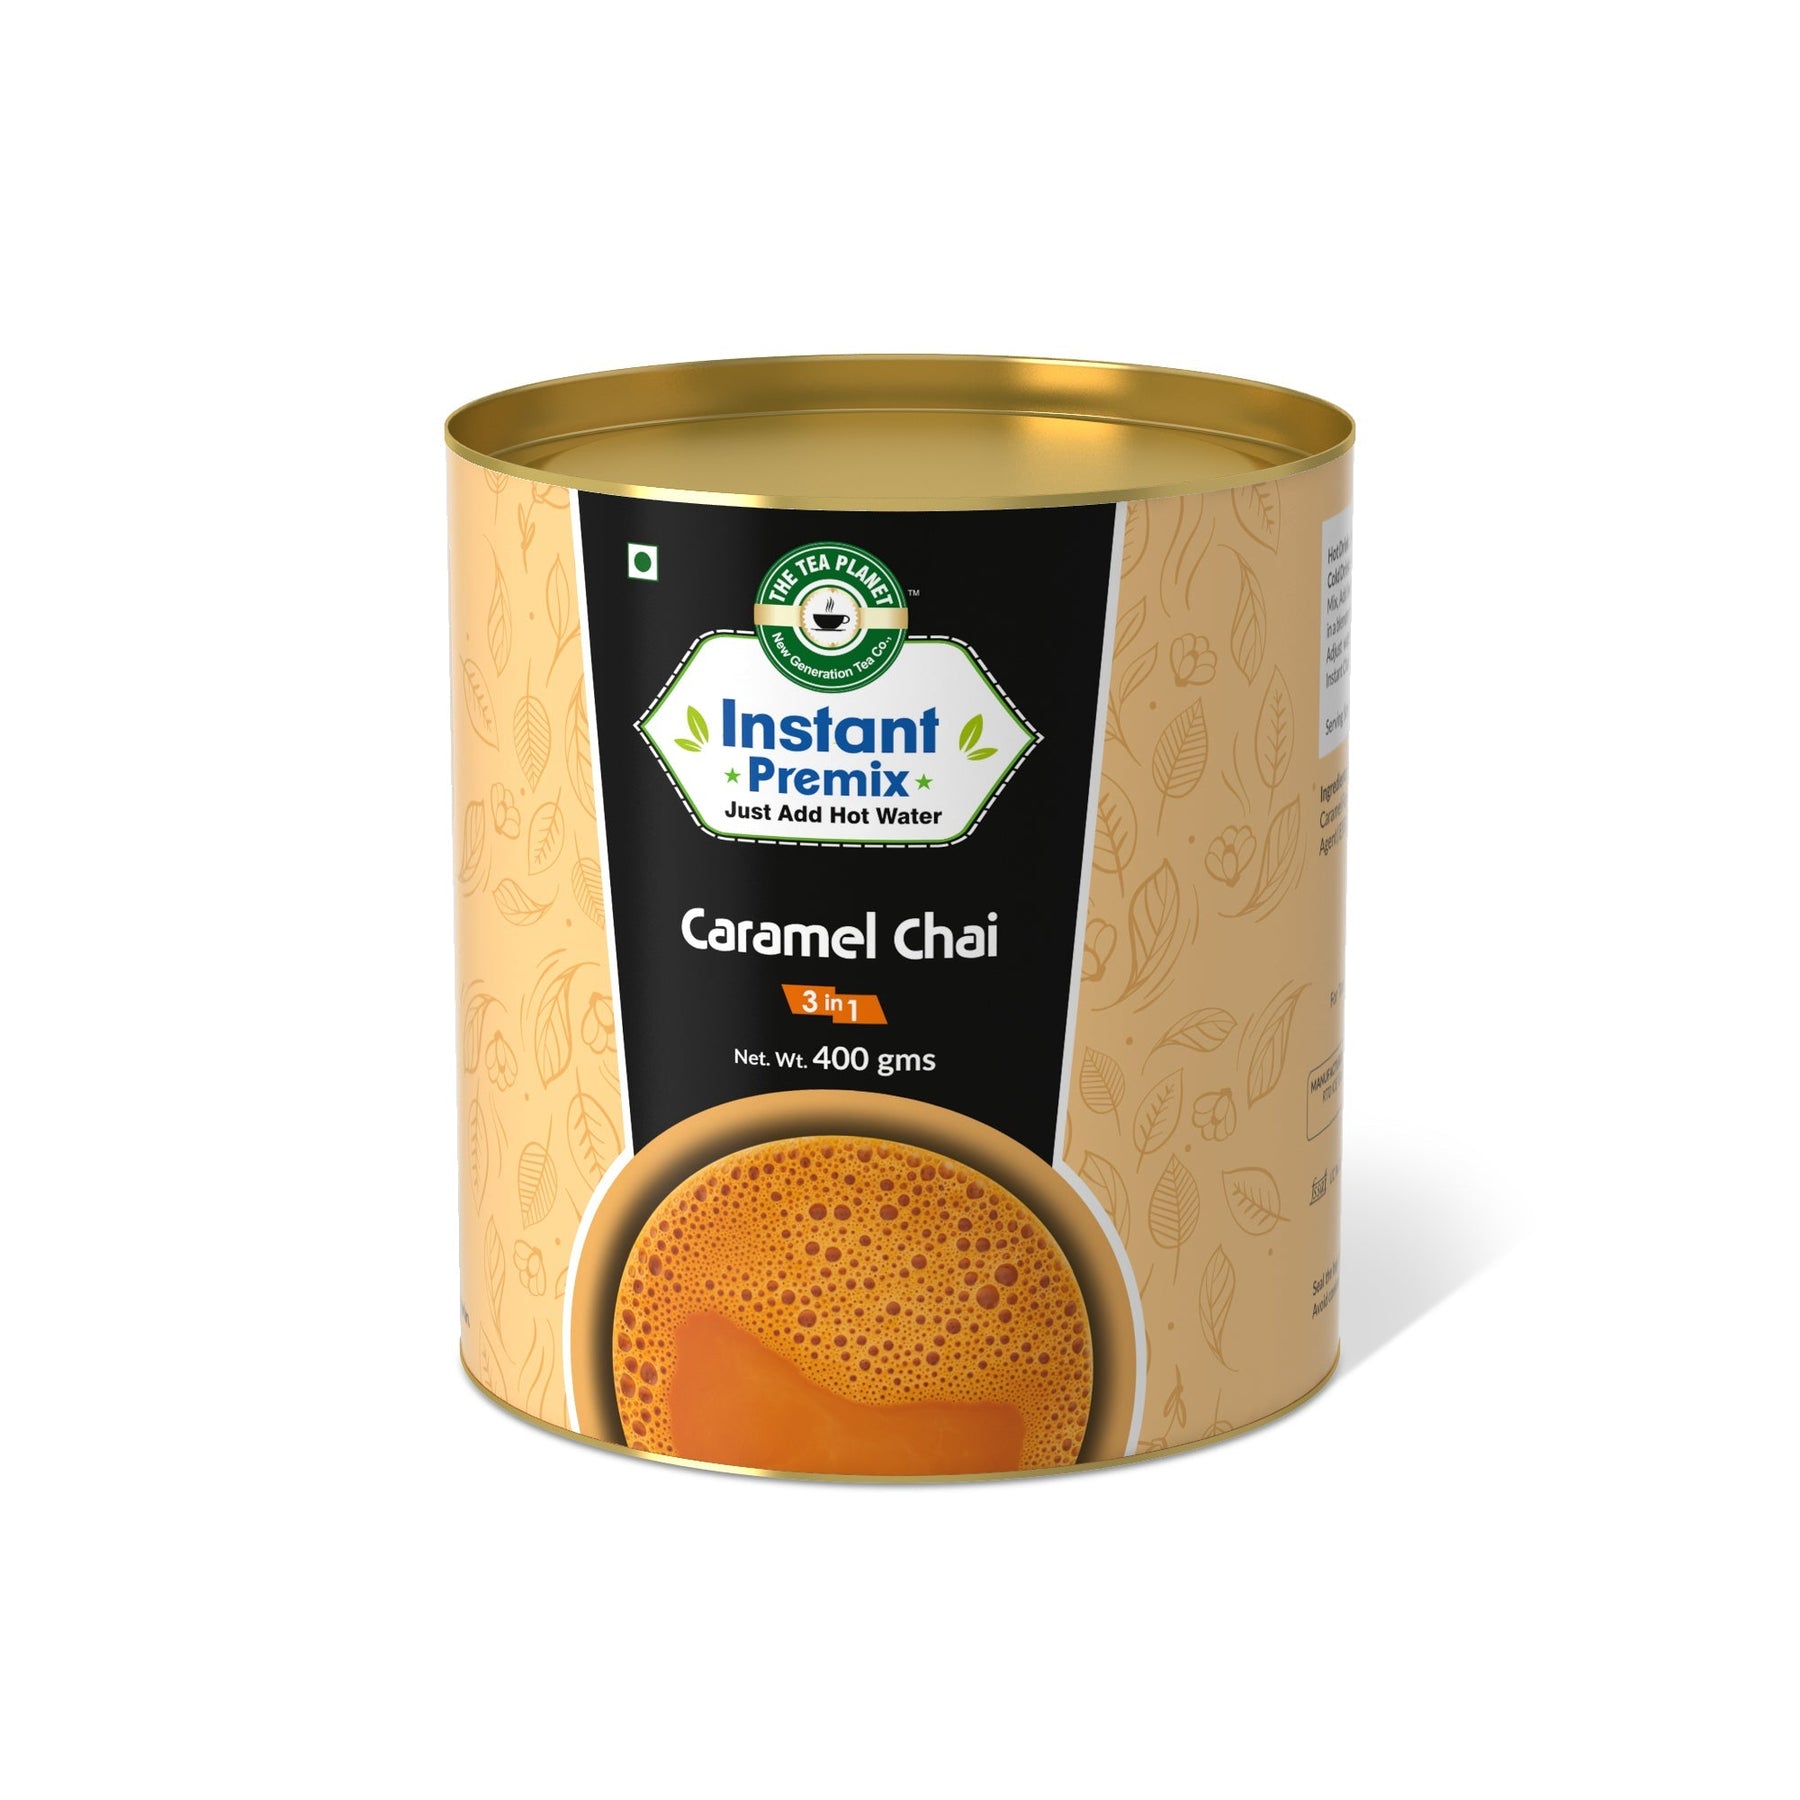 Caramel Chai Premix (3 in 1) - 800 gms